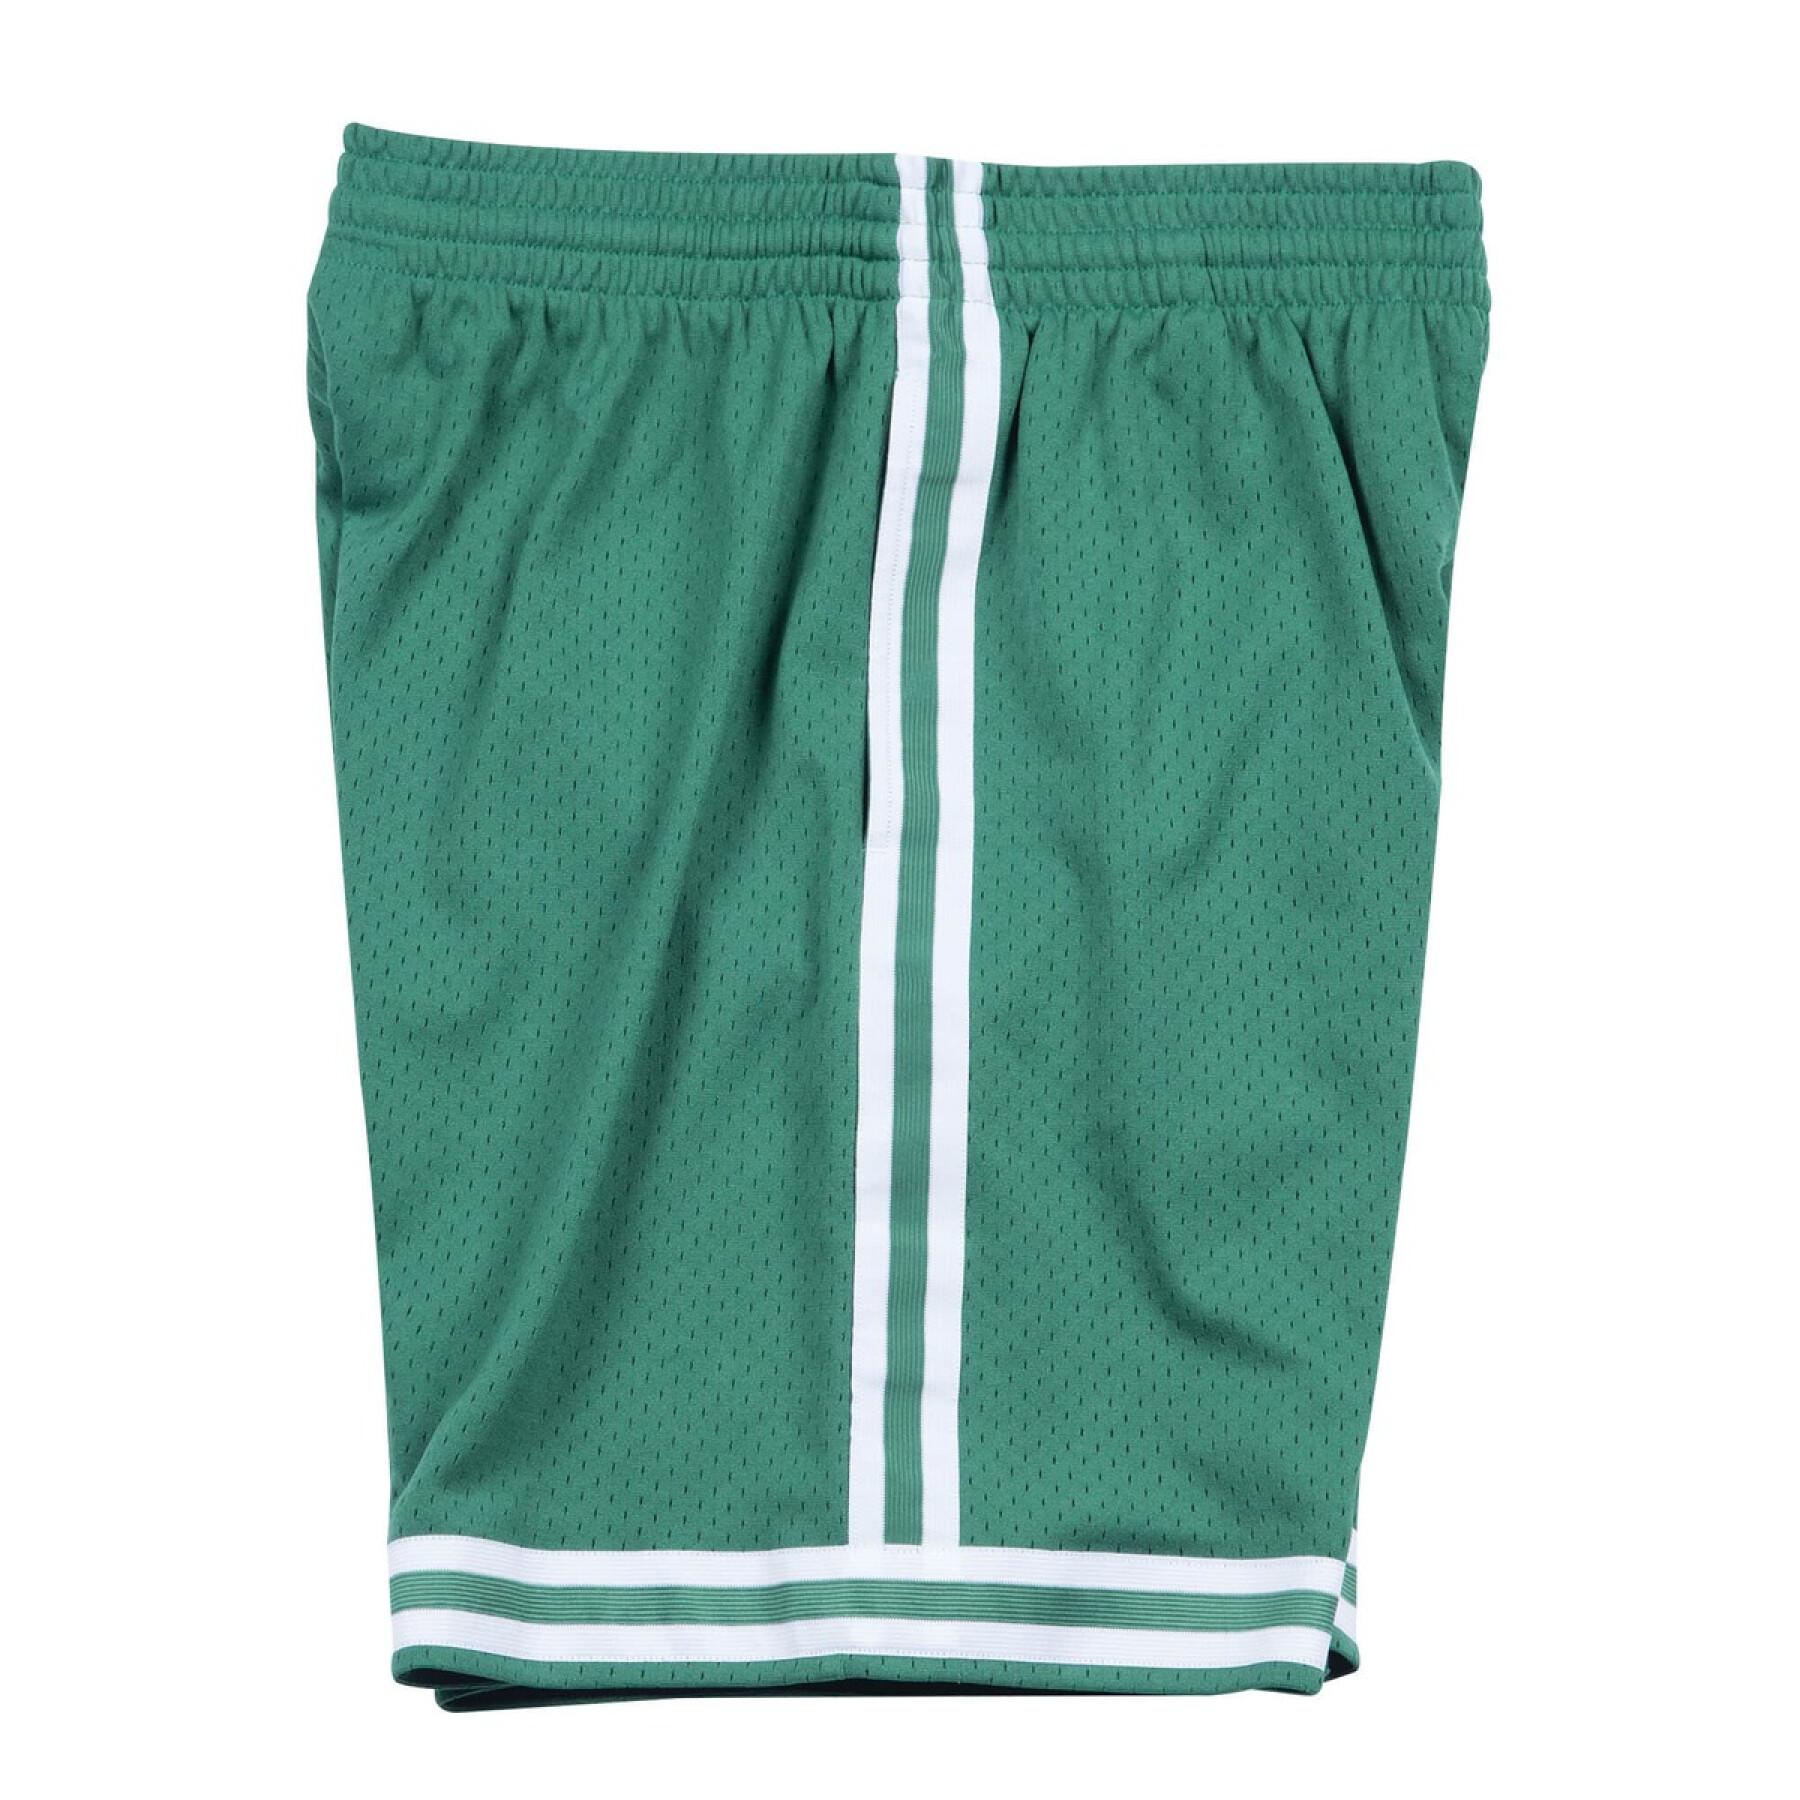 Shorts Boston Celtics nba